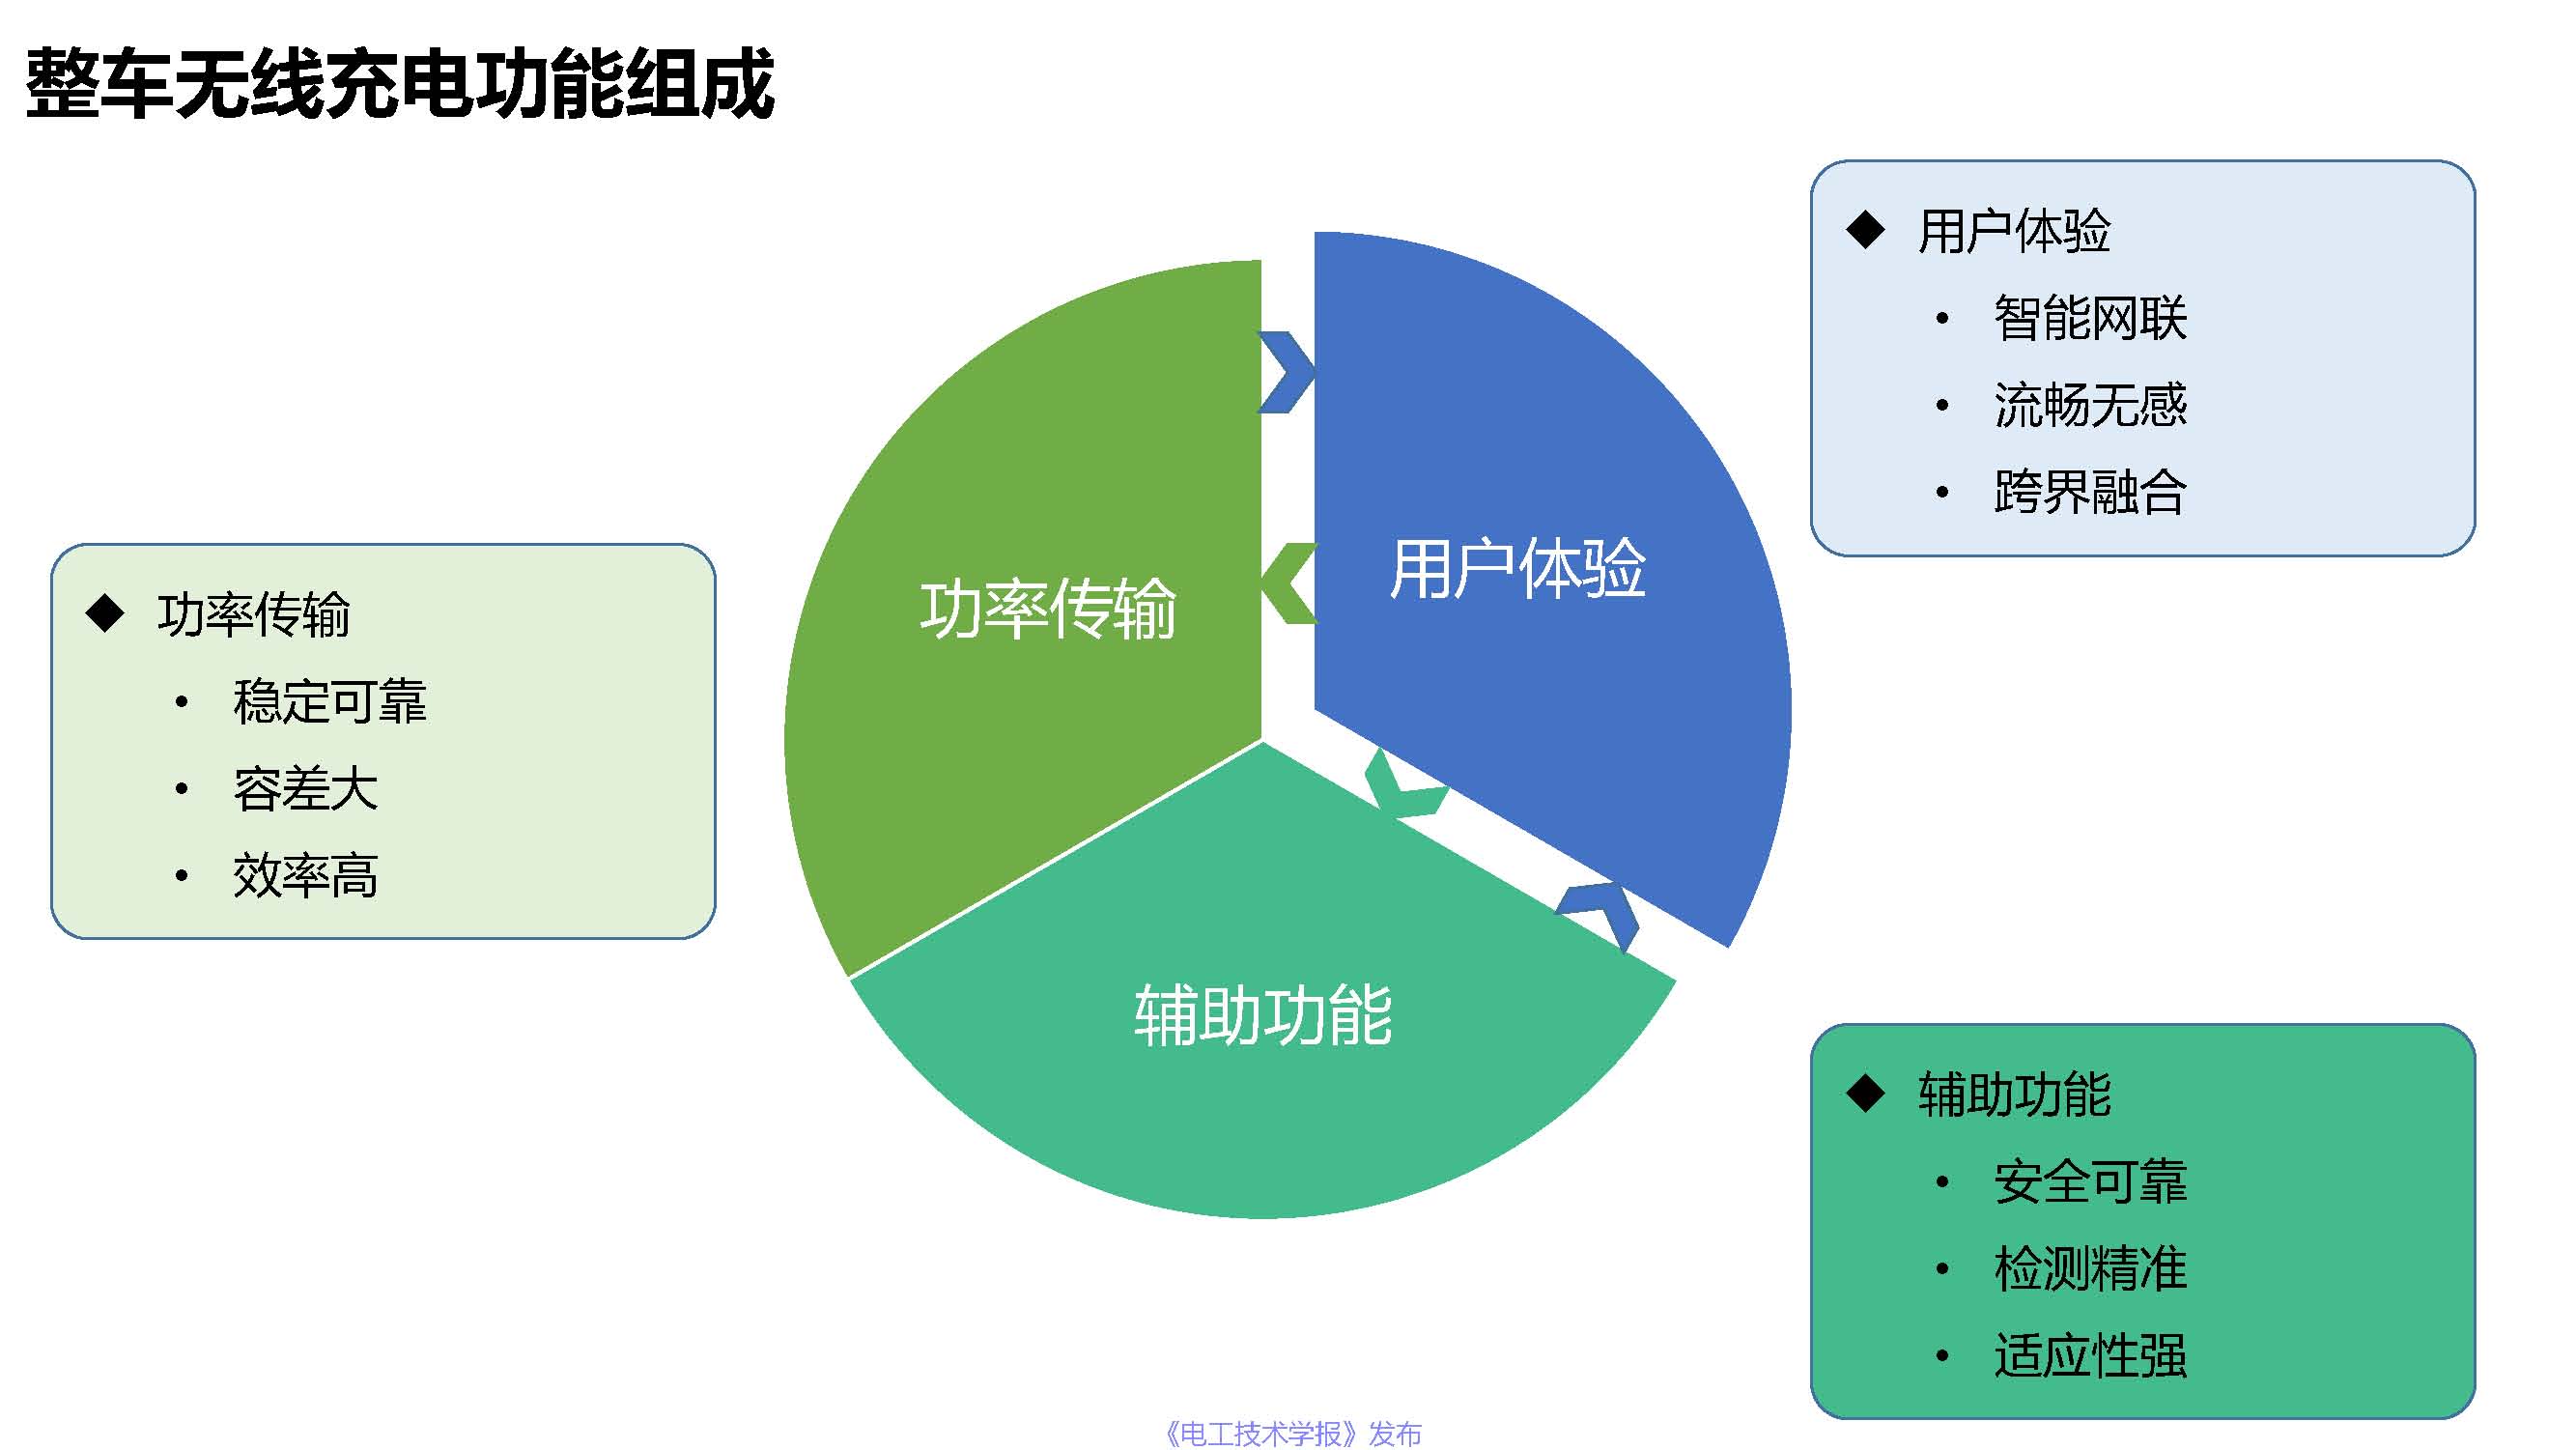 上海捷能汽车技术有限公司吴巍峰：无线充电系统在整车上的应用